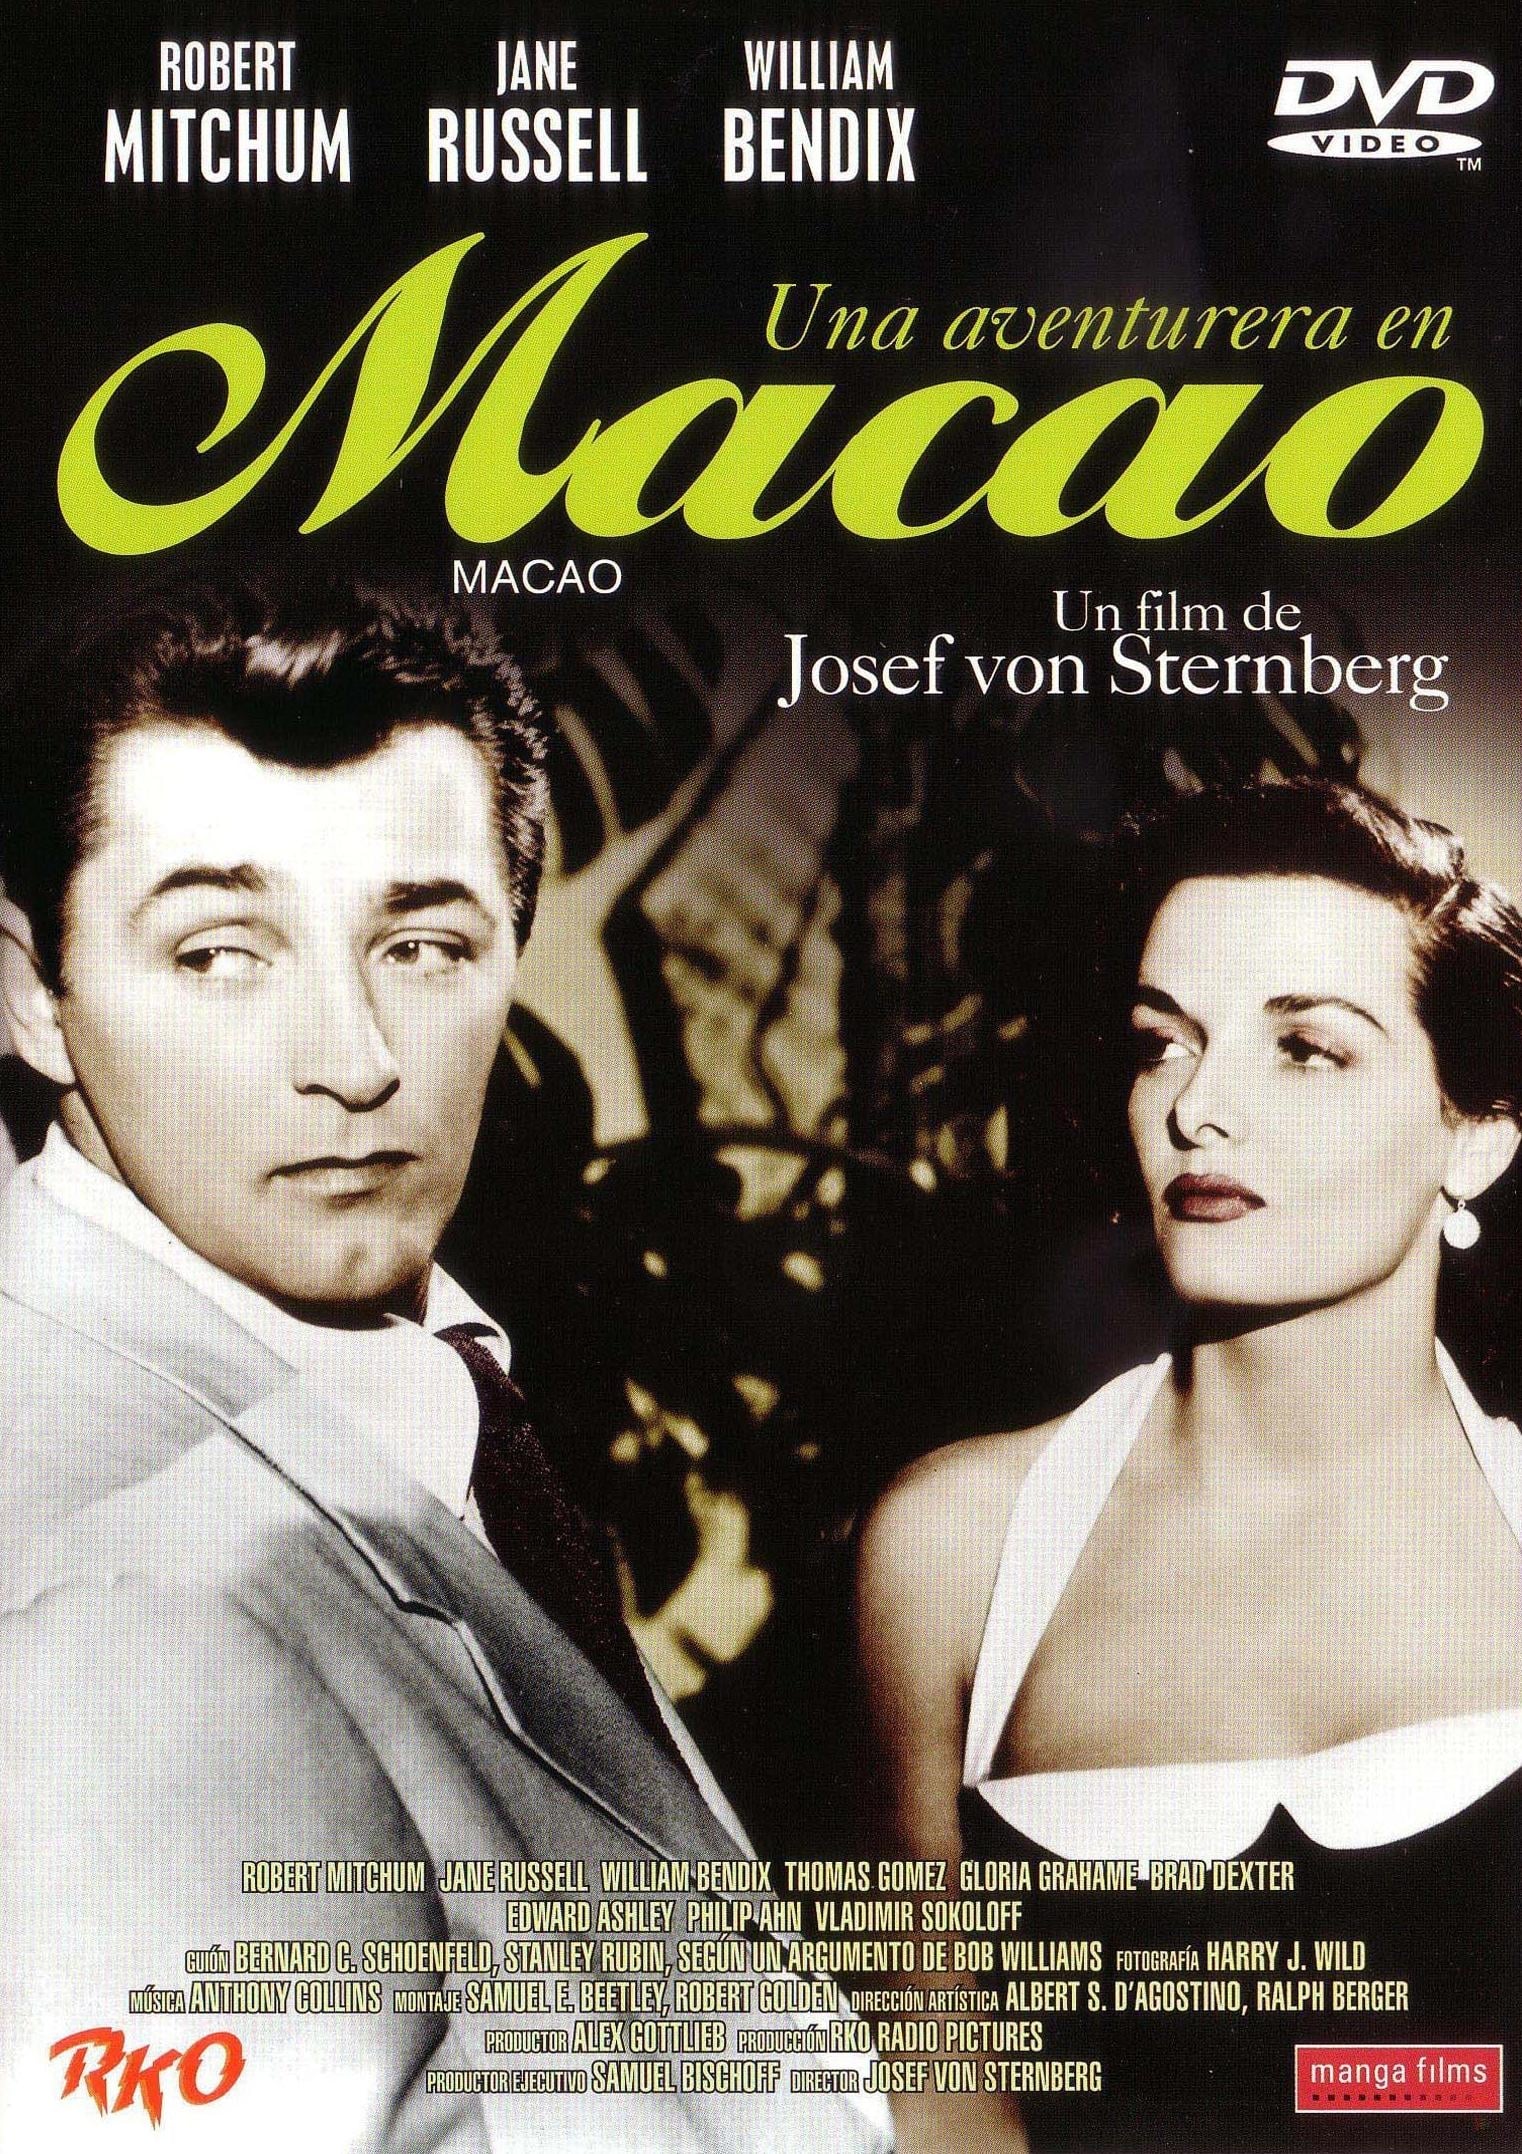 Macao 1952 subtitles torrent 4x02 the vampire diaries sub ita torrent